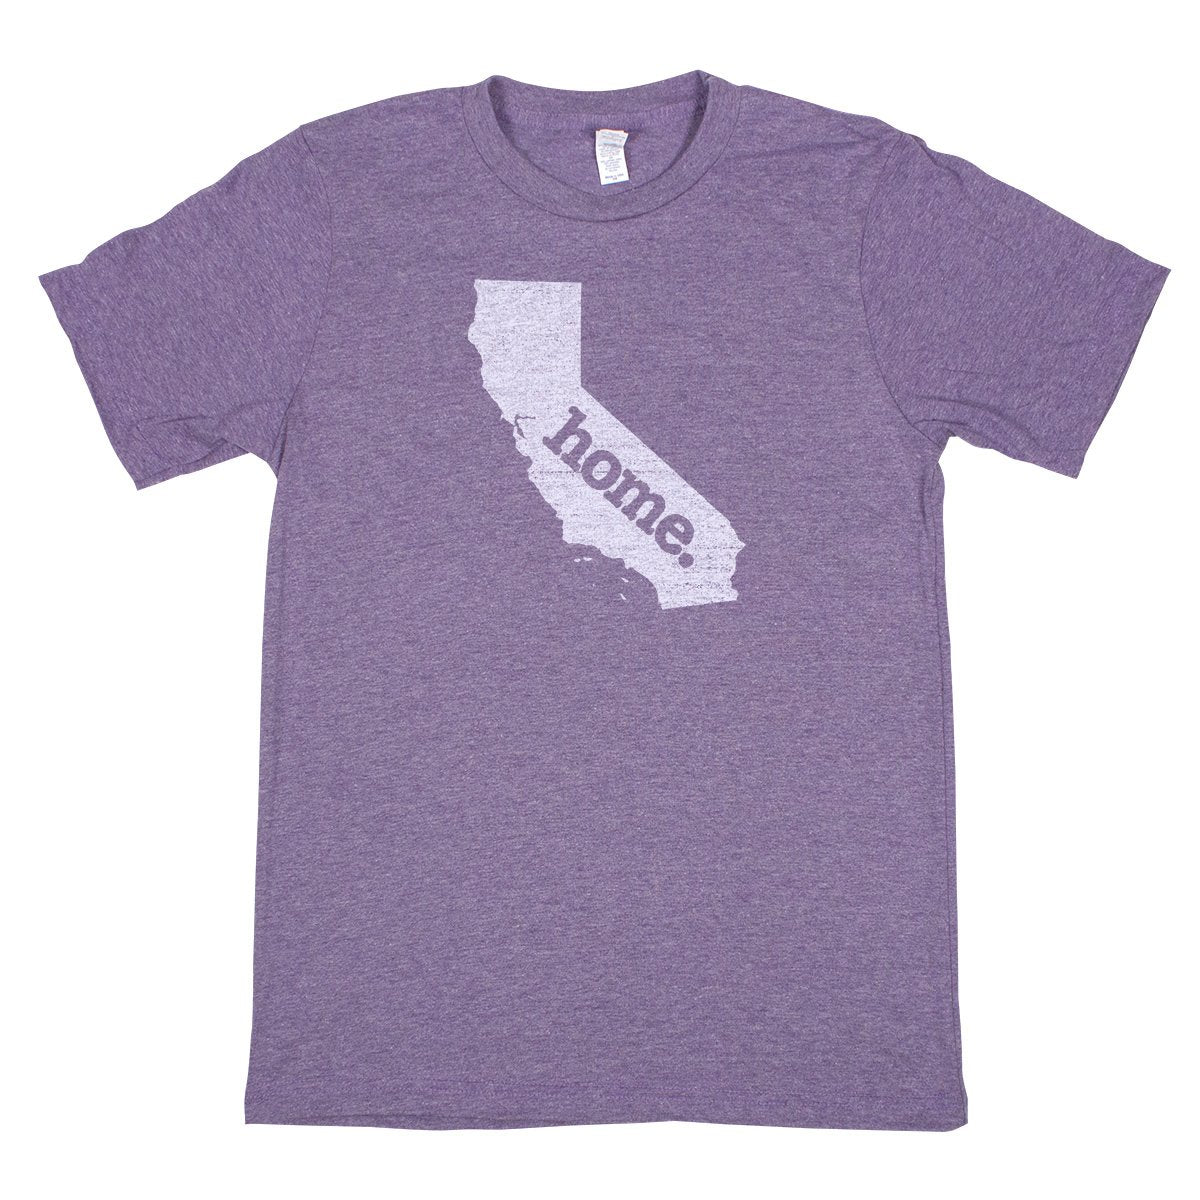 home. Men’s Unisex T-Shirt - Oregon